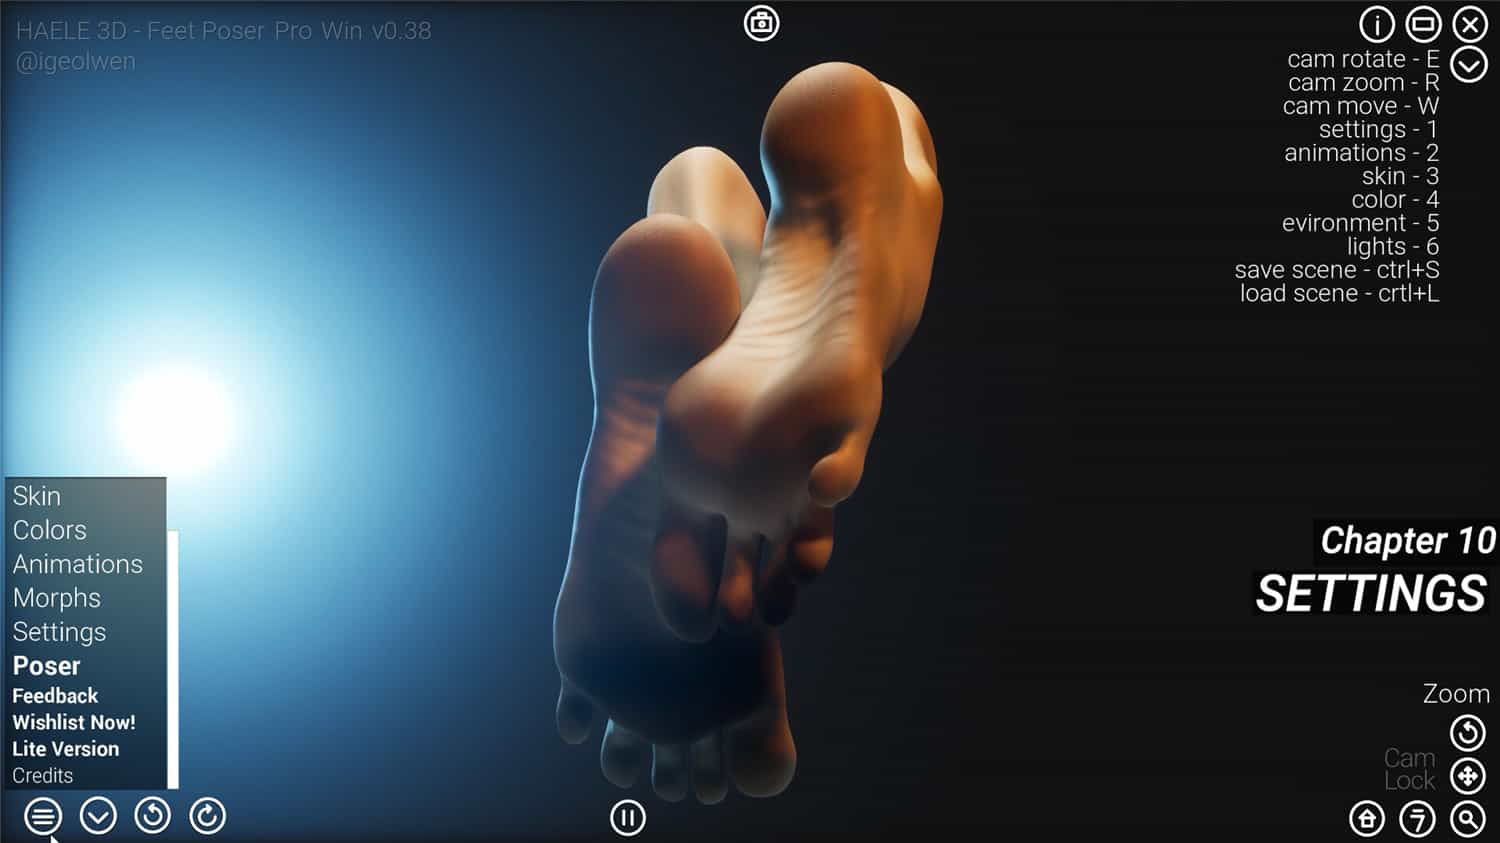 足部造型模拟器 - 专业版/HAELE 3D - Feet Poser Pro-2